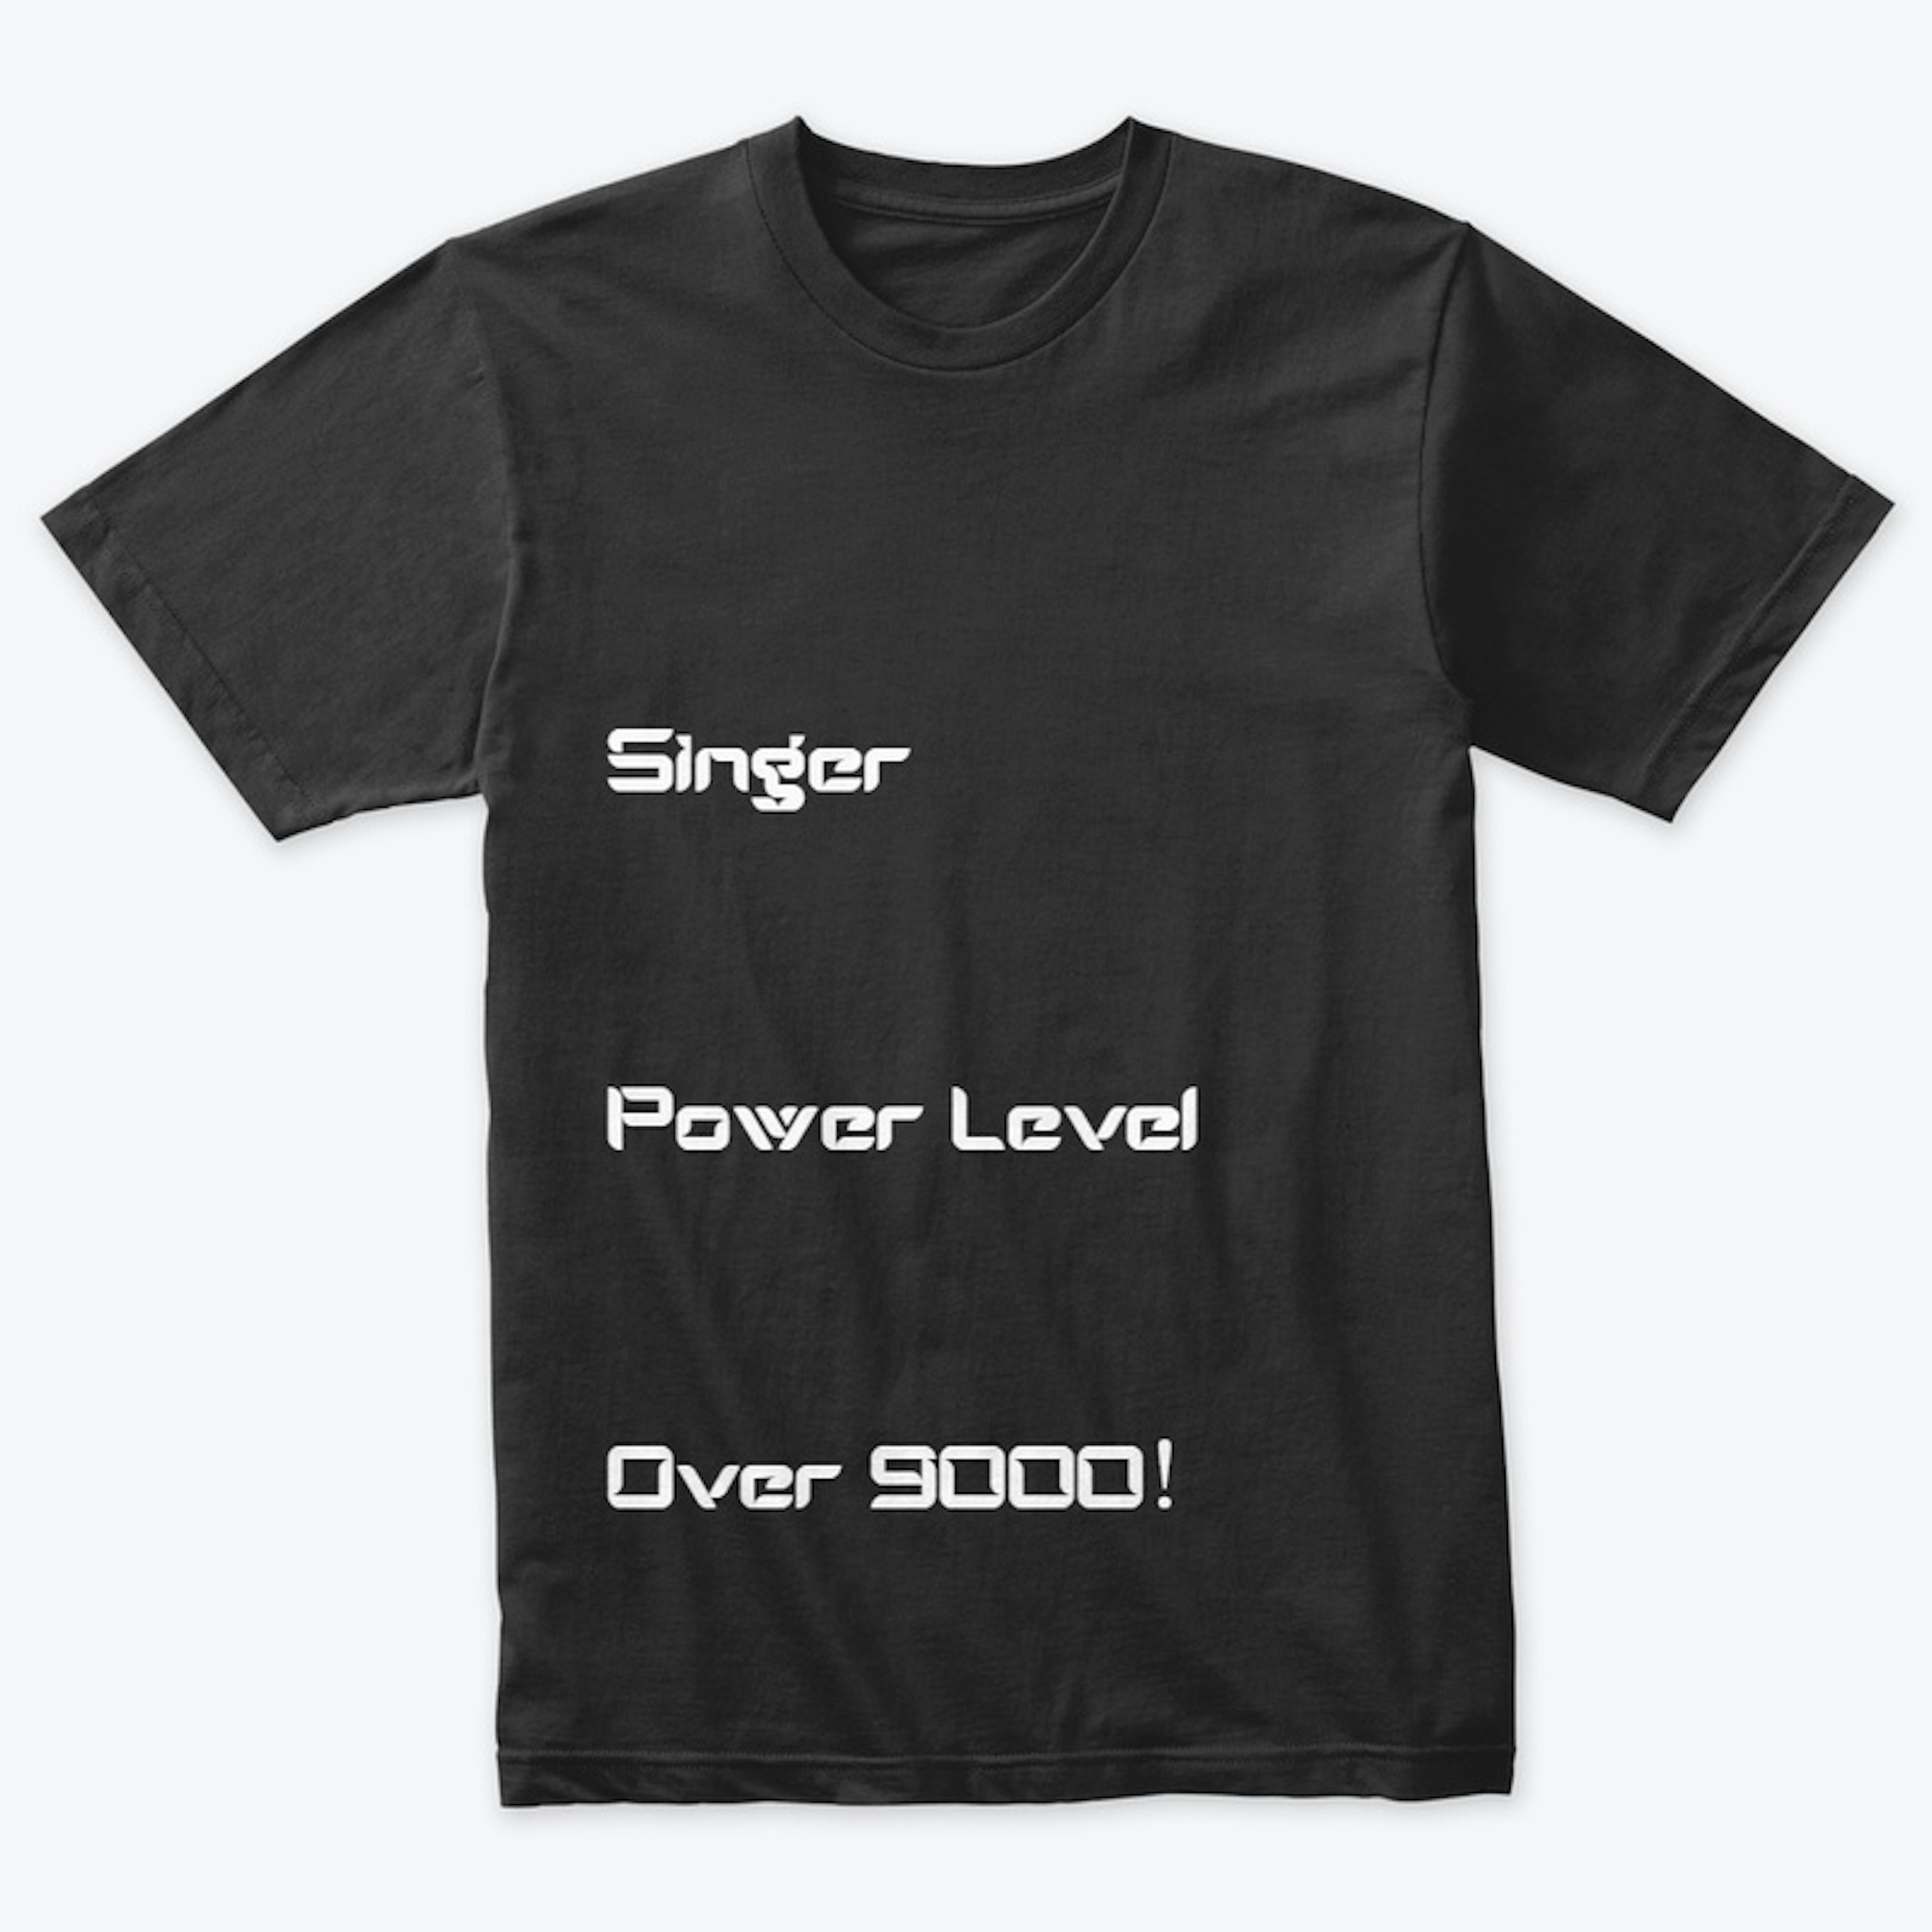 Singer power level over 9000